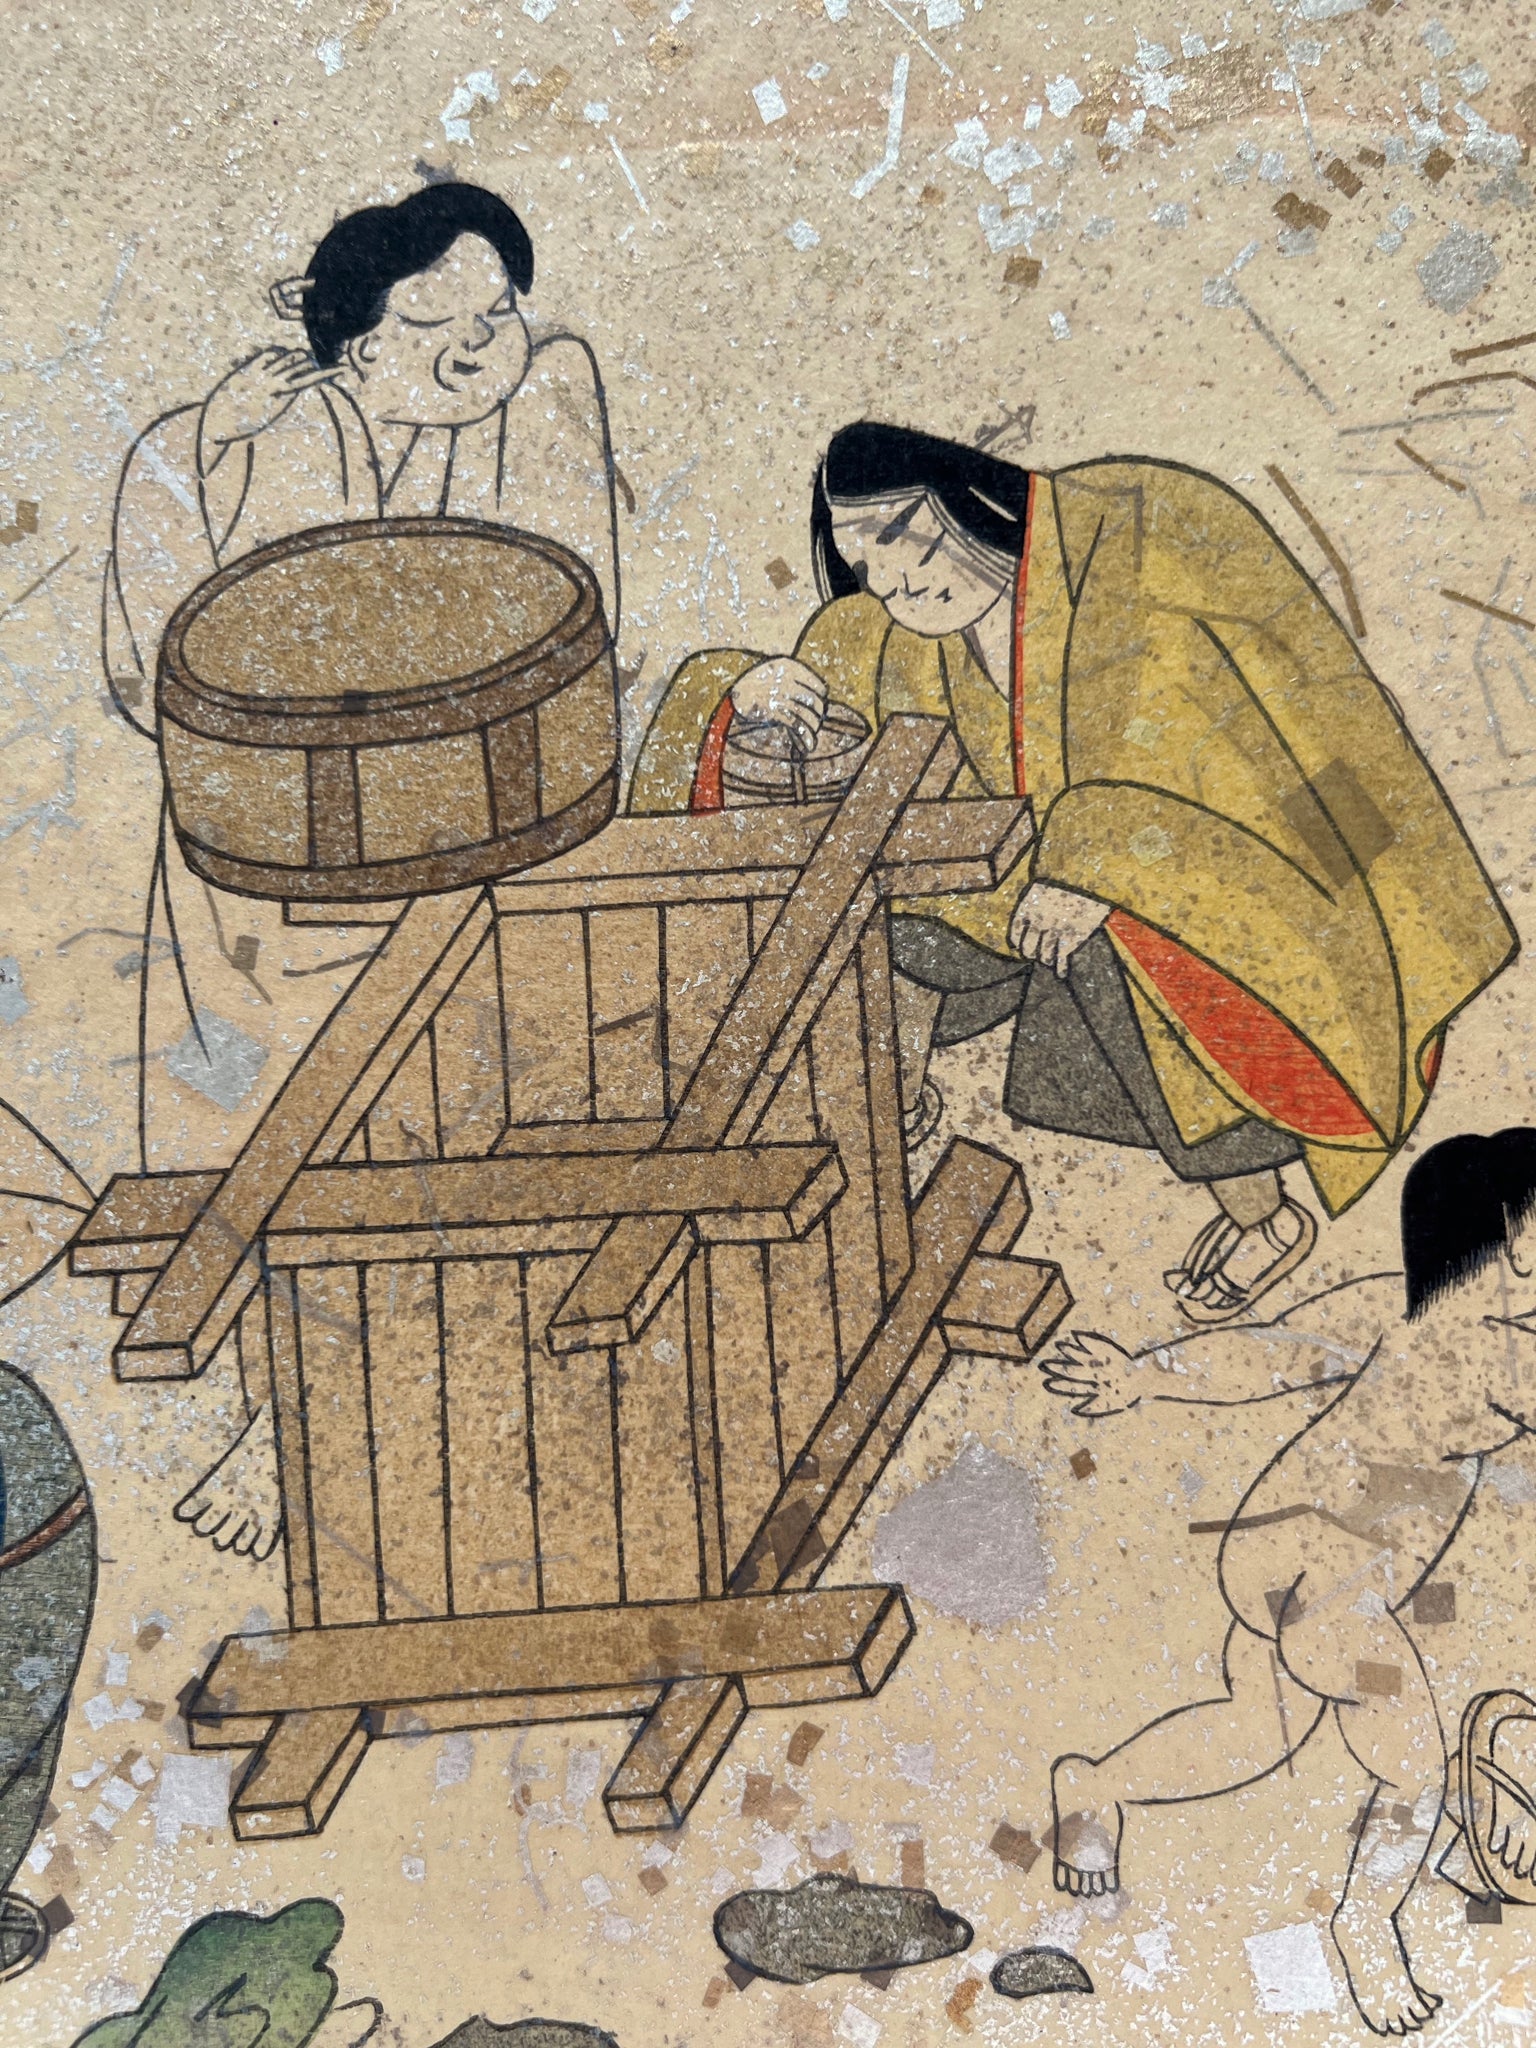 Estampe japonaise en forme d'éventail parsemée de fragments d'or et d'argent, gros plan femmes qui puisent de l'eau, sceau en bois, puits, enfant.